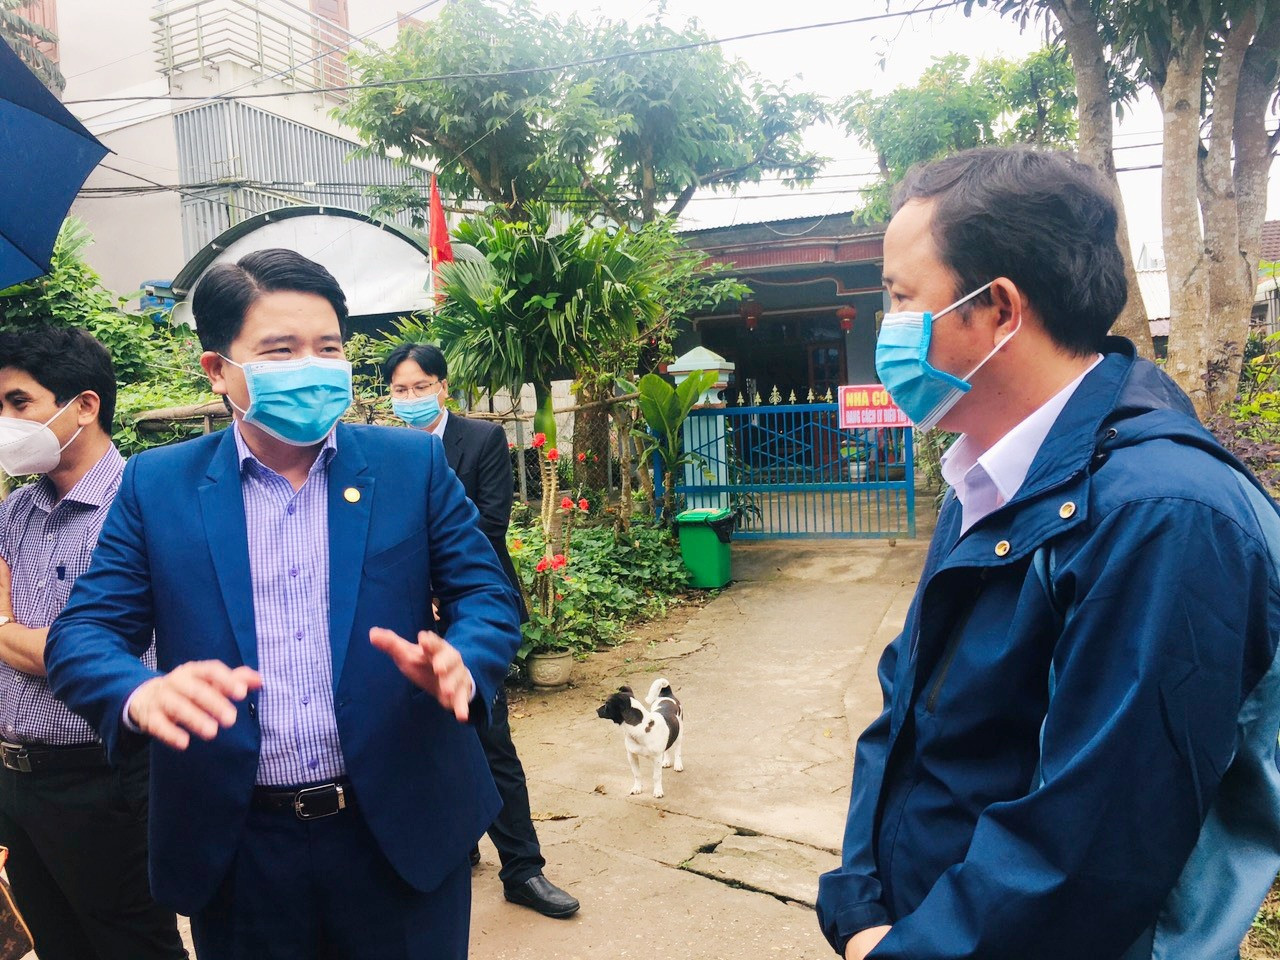 Phó Chủ tịch UBND tỉnh Trần Văn Tân trao đổi với lãnh đạo xã Quế Trung (Nông Sơn) về việc điều trị các trường hợp F0 thể nhẹ tại nhà.     Ảnh: S.L